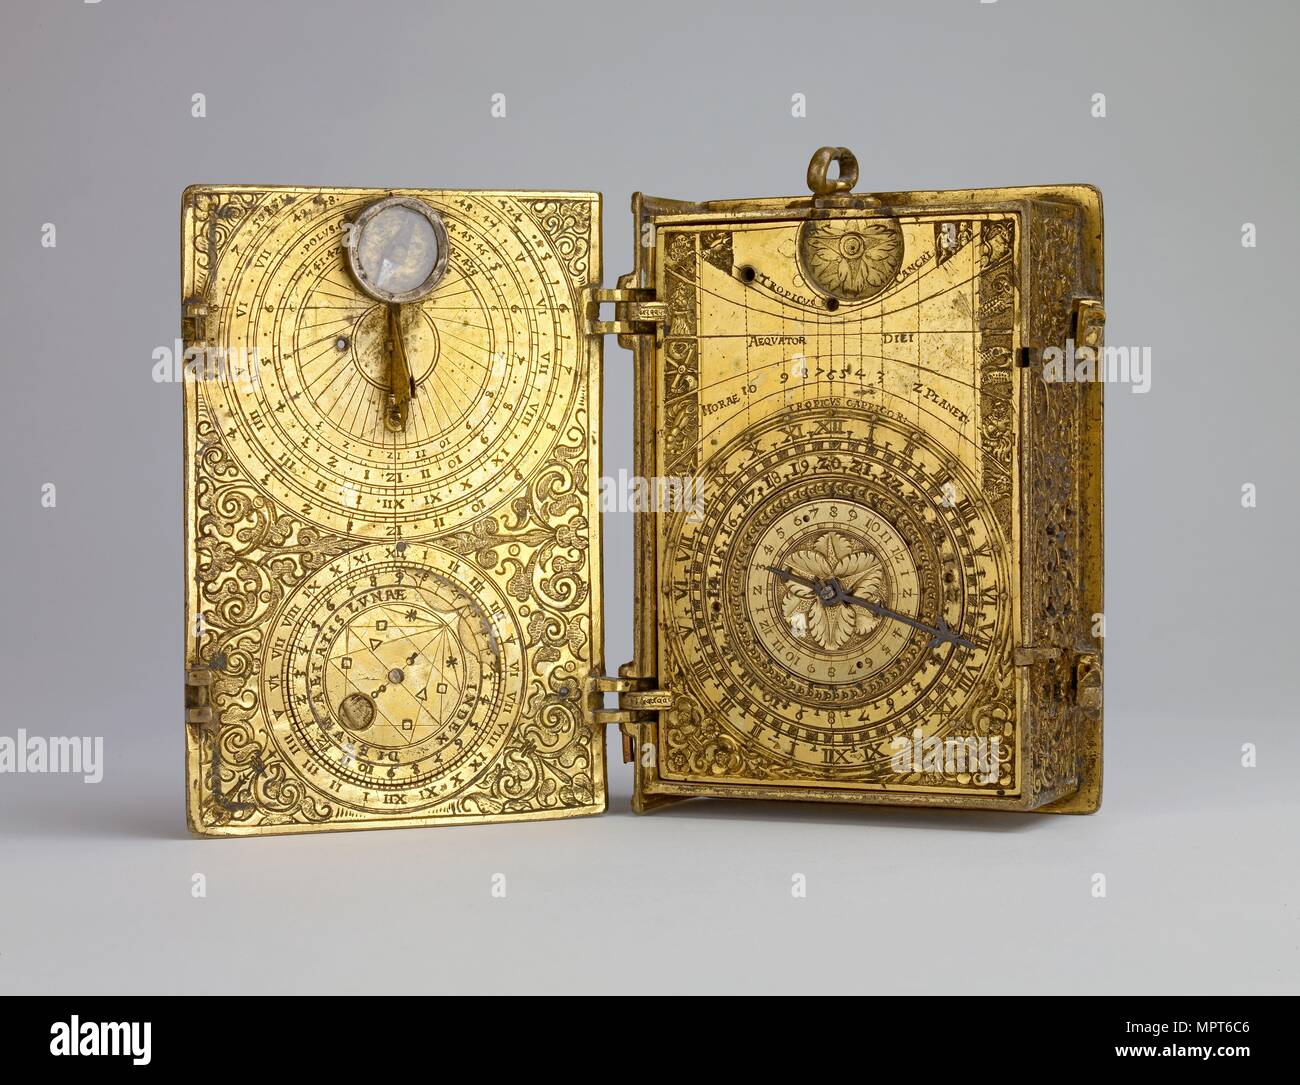 Carcasa de latón dorado-reloj-reloj con alarma, relojes solares y lunares volvelle en forma de libro, c1580. Artista: Hans Kock. Foto de stock